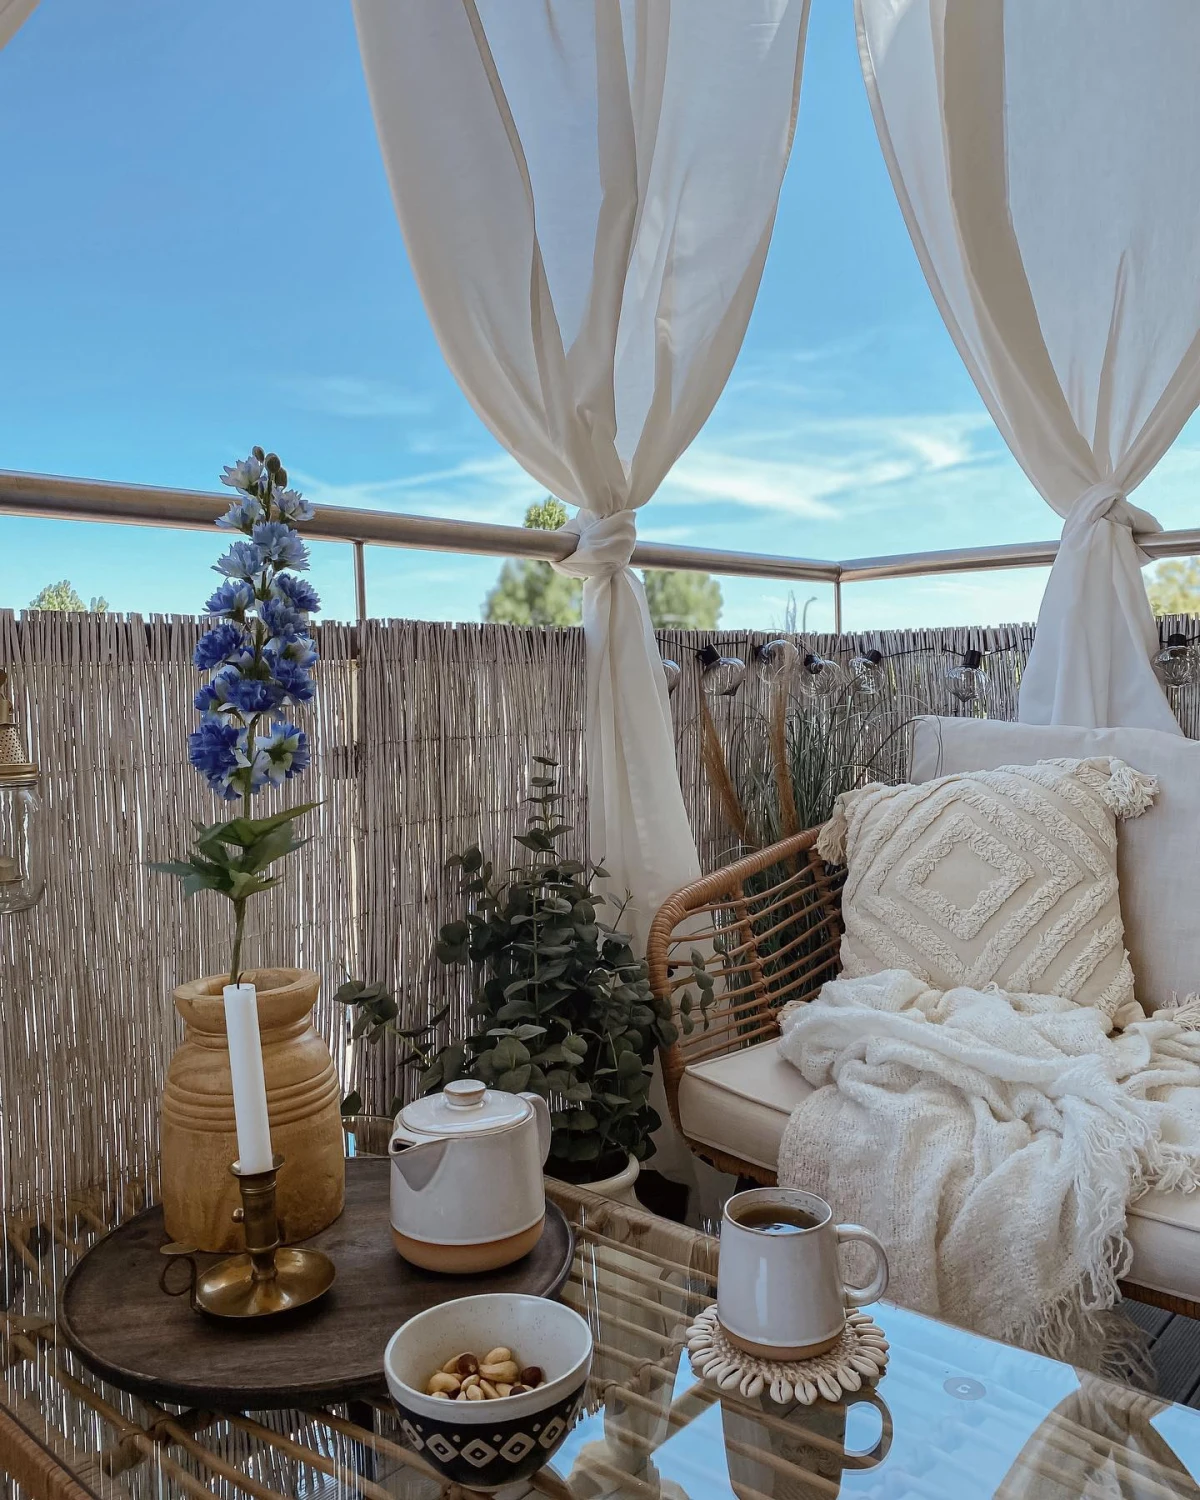 decoration terrasse style boheme chic table en verre canape coussins blancs